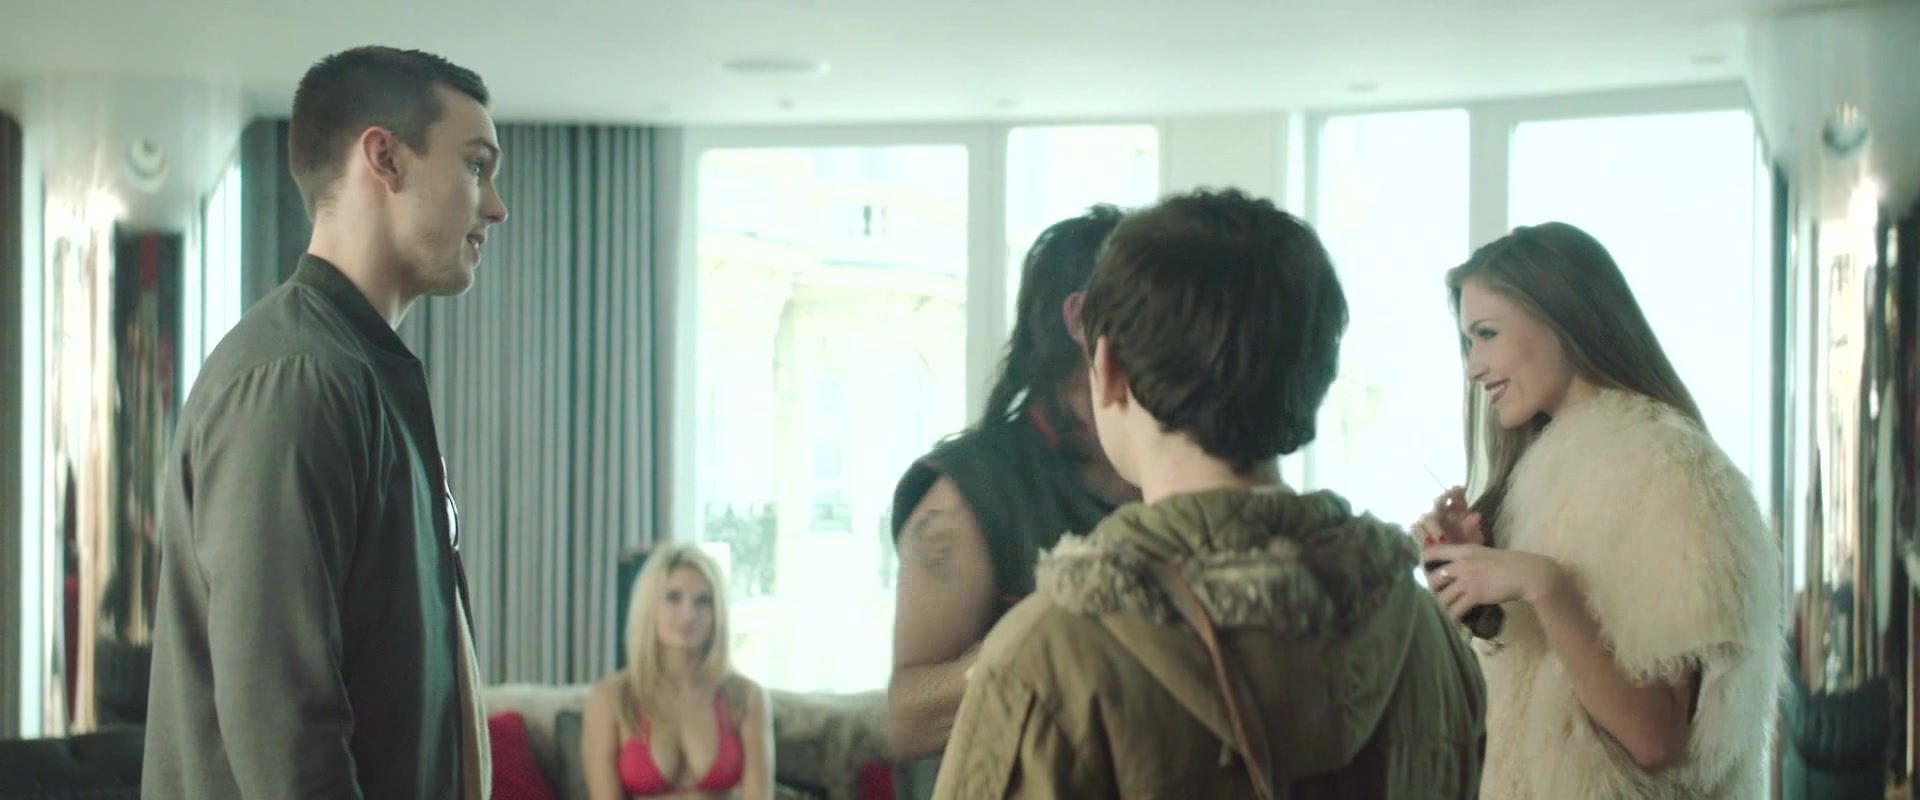 Dani Daniels Sex video Georgia King nude - Kill Your Friends (2015) Solo Female